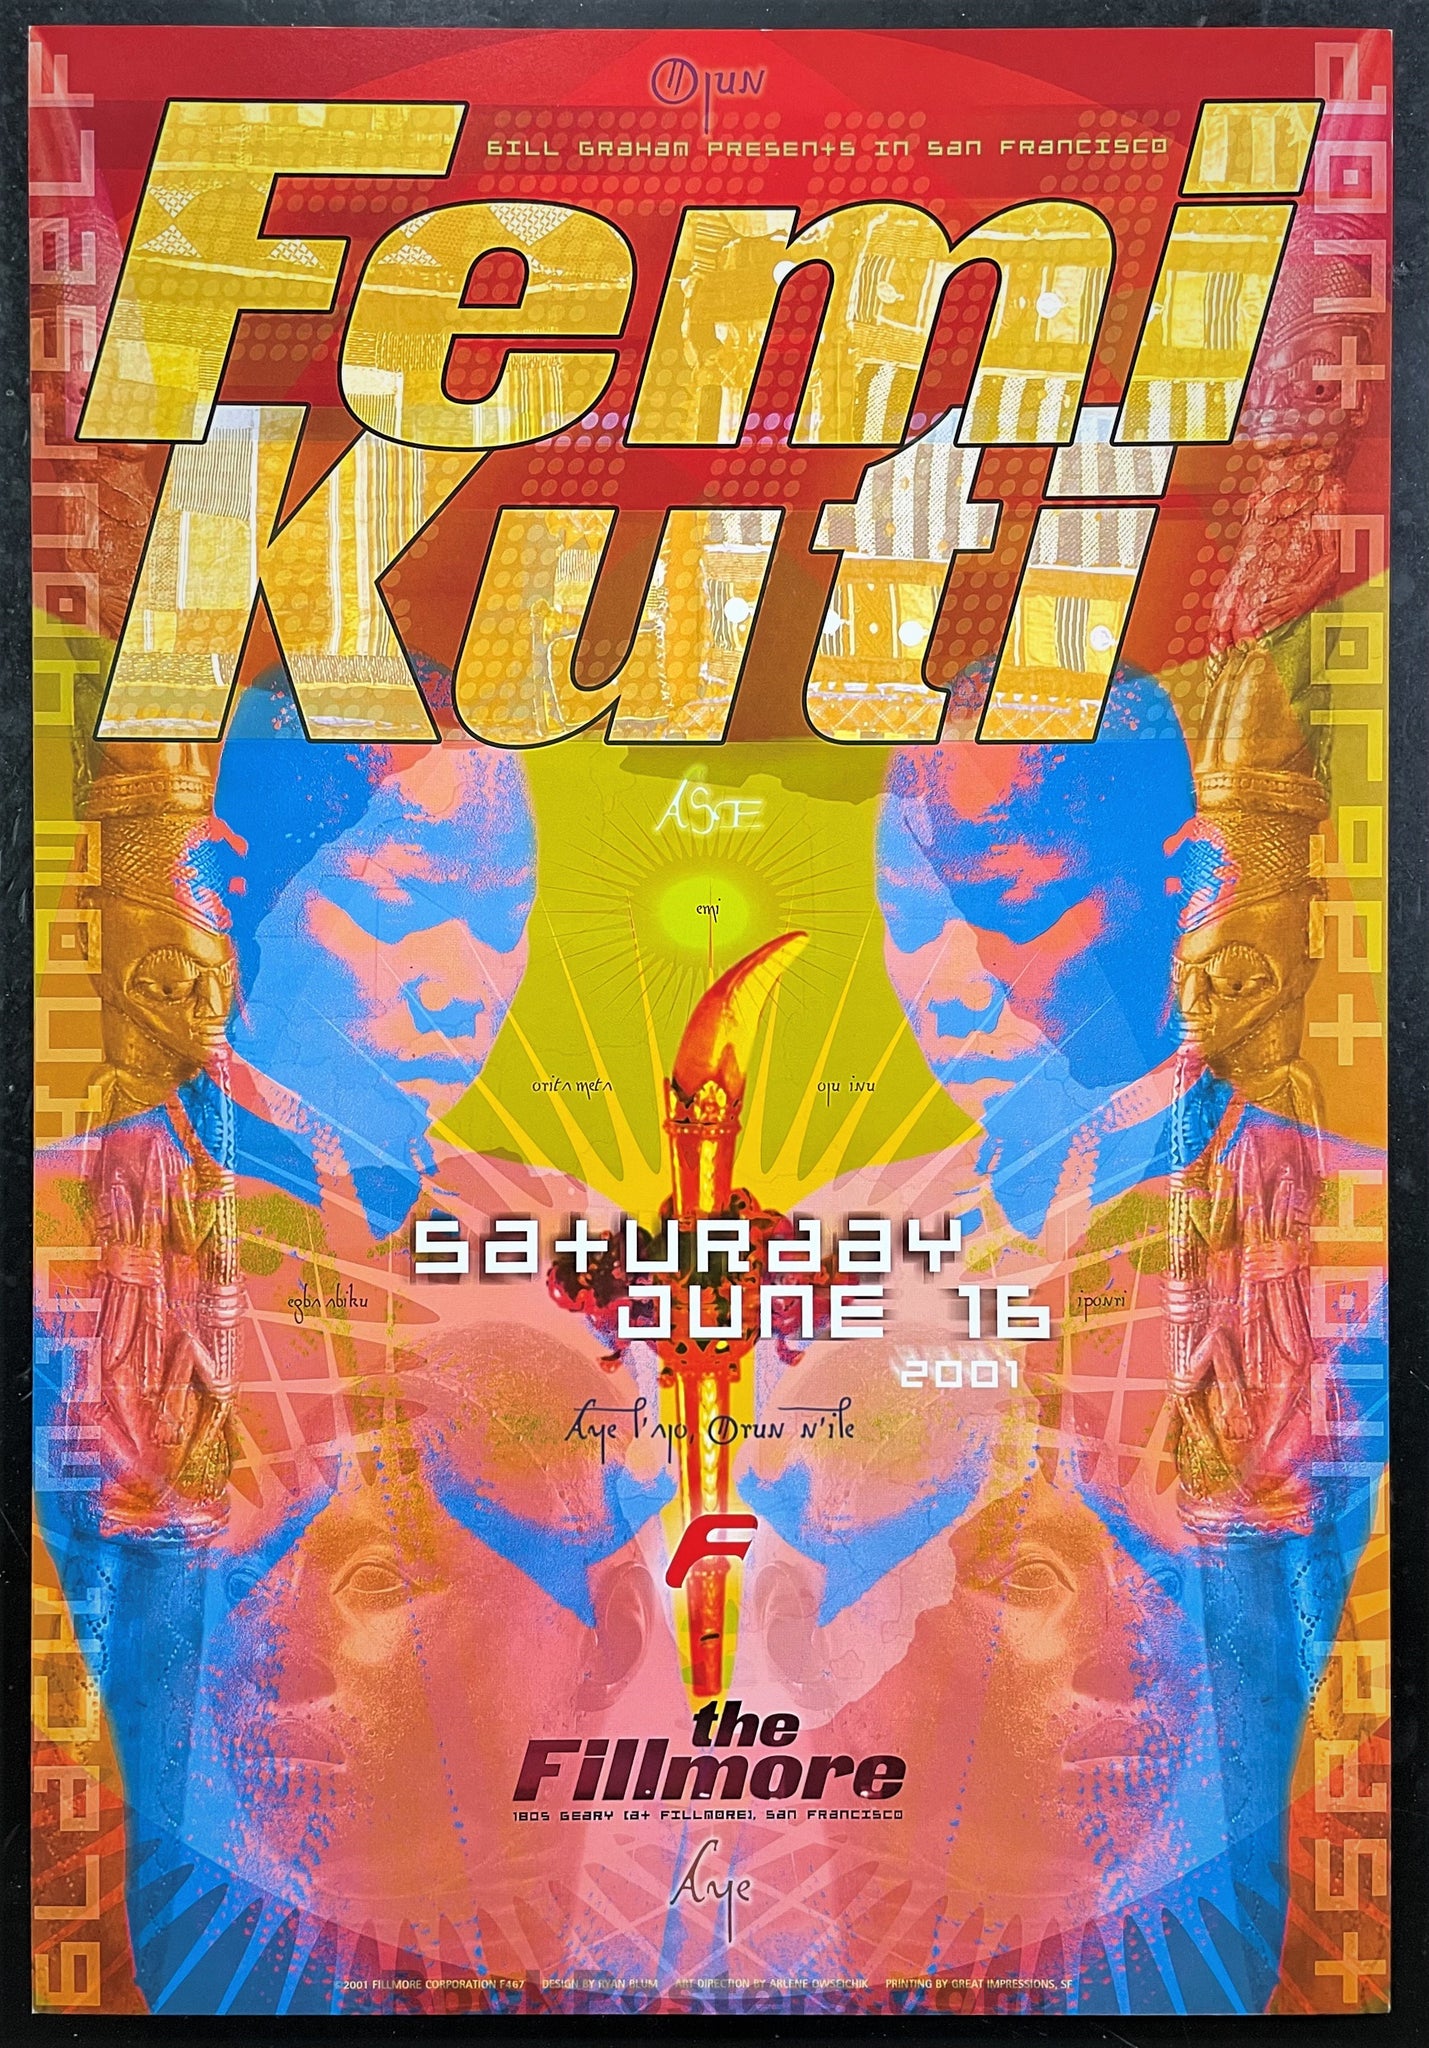 NF-461 - Femi Kuti - 2001 Poster - The Fillmore - Near Mint